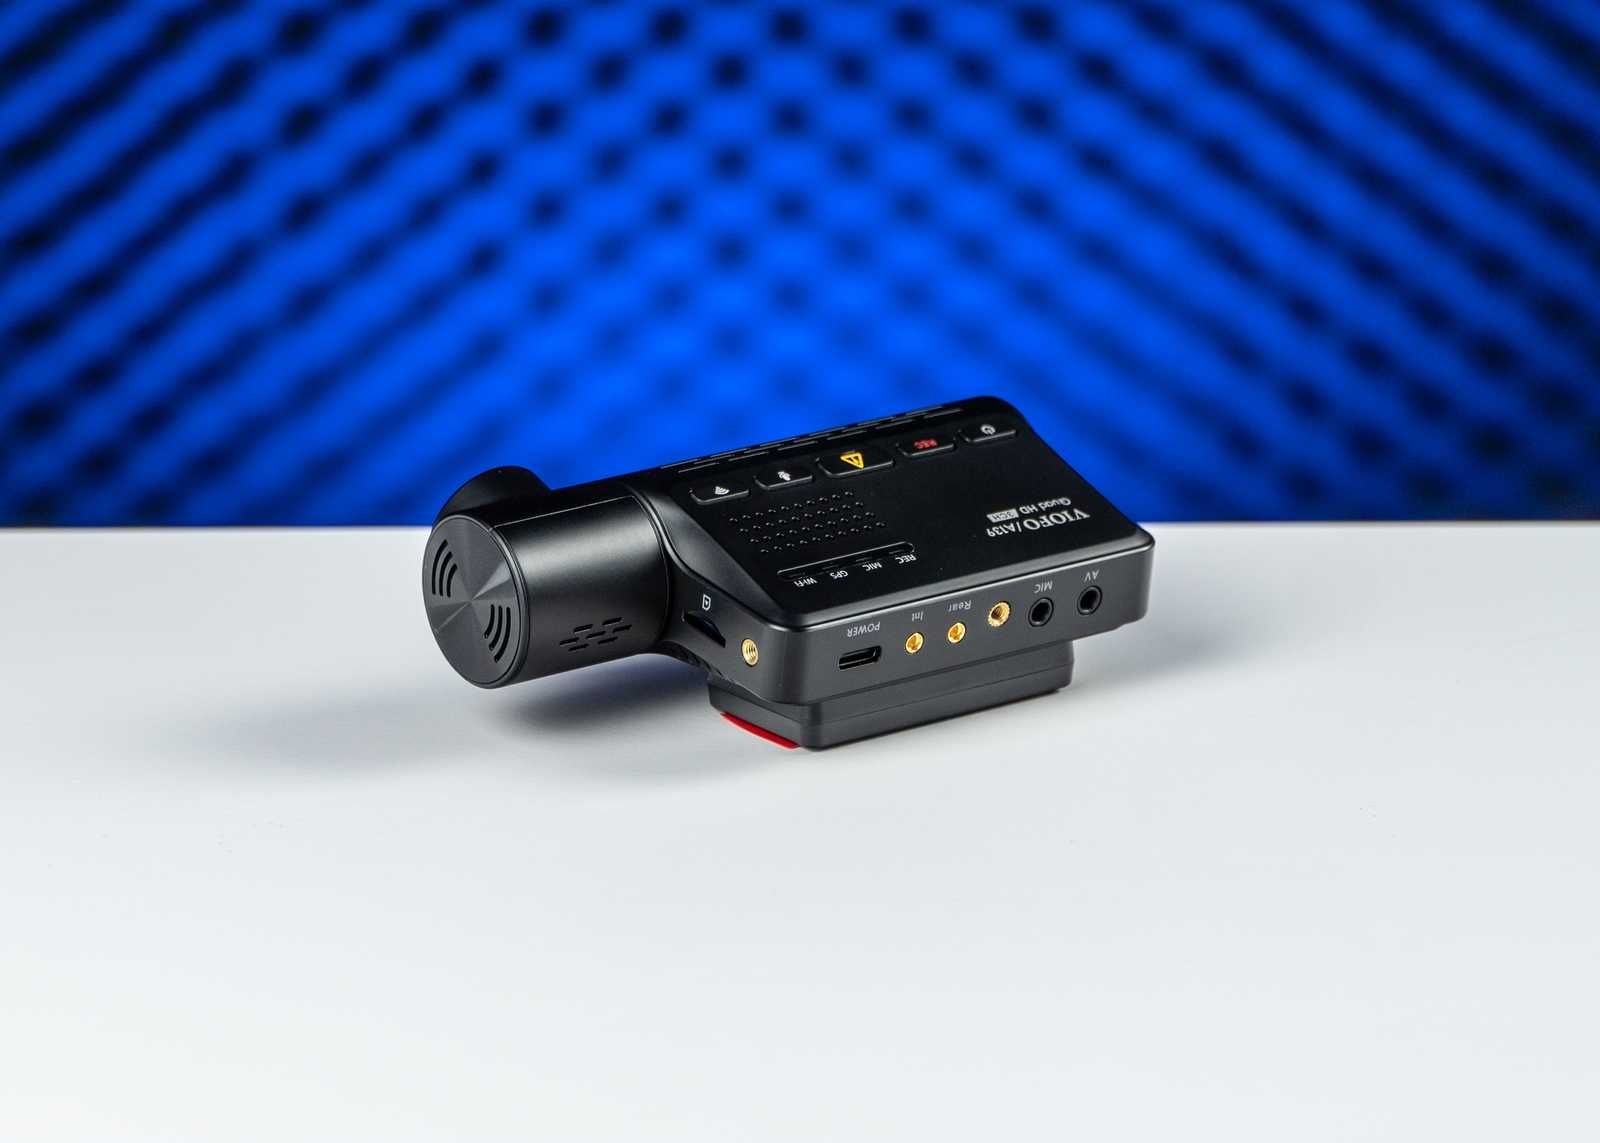 Видеорегистратор VIOFO A139 3CH с тремя камерами и GPS - Гарантия